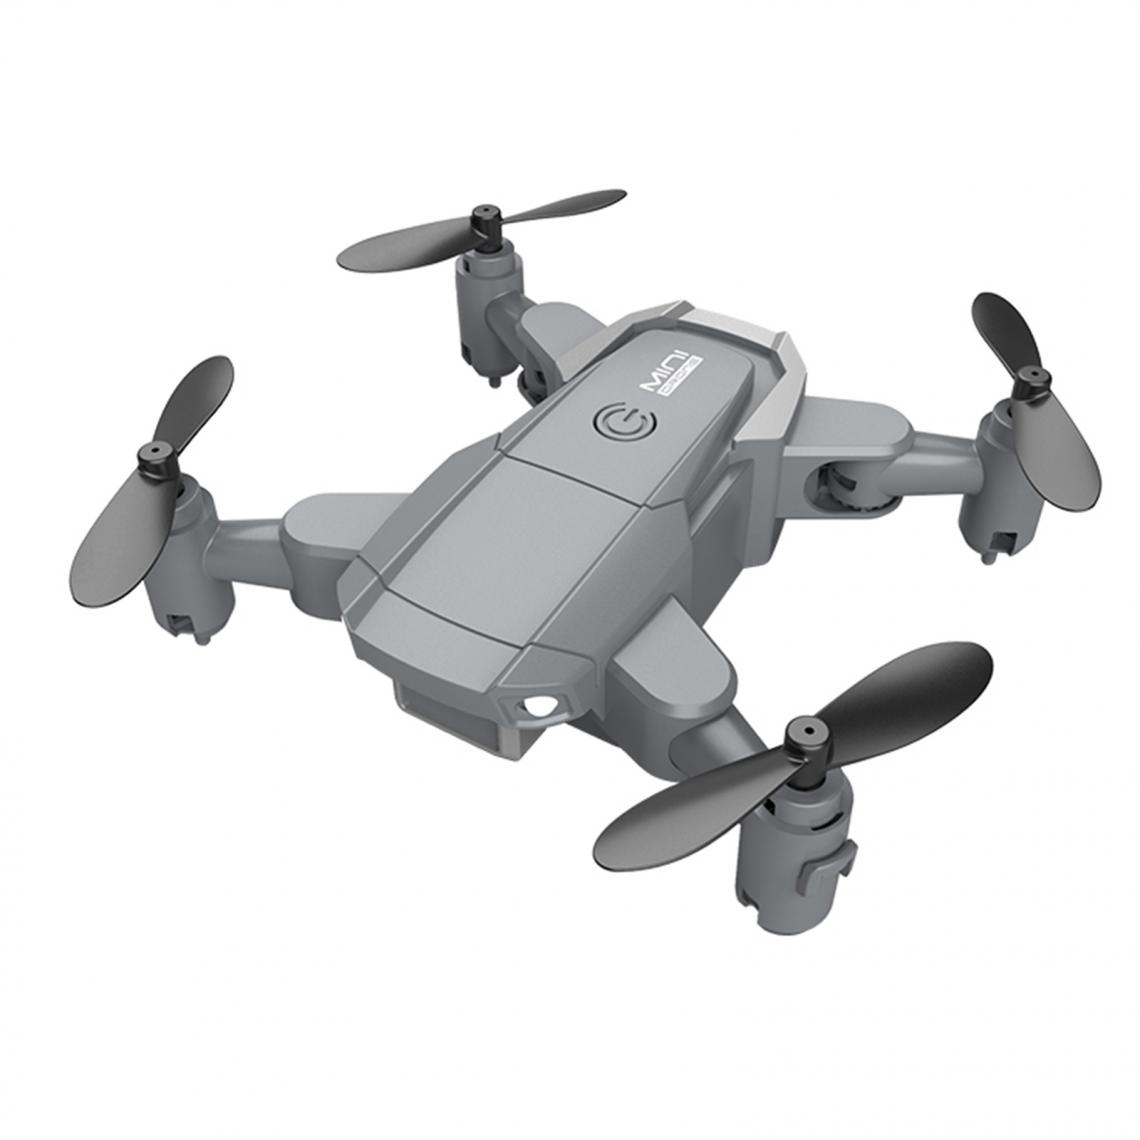 marque generique - KY905 Mini Drone 4K / 1080P Caméra Quadricoptère RC Pliable 4K Simple + Étui - Caméras Sportives